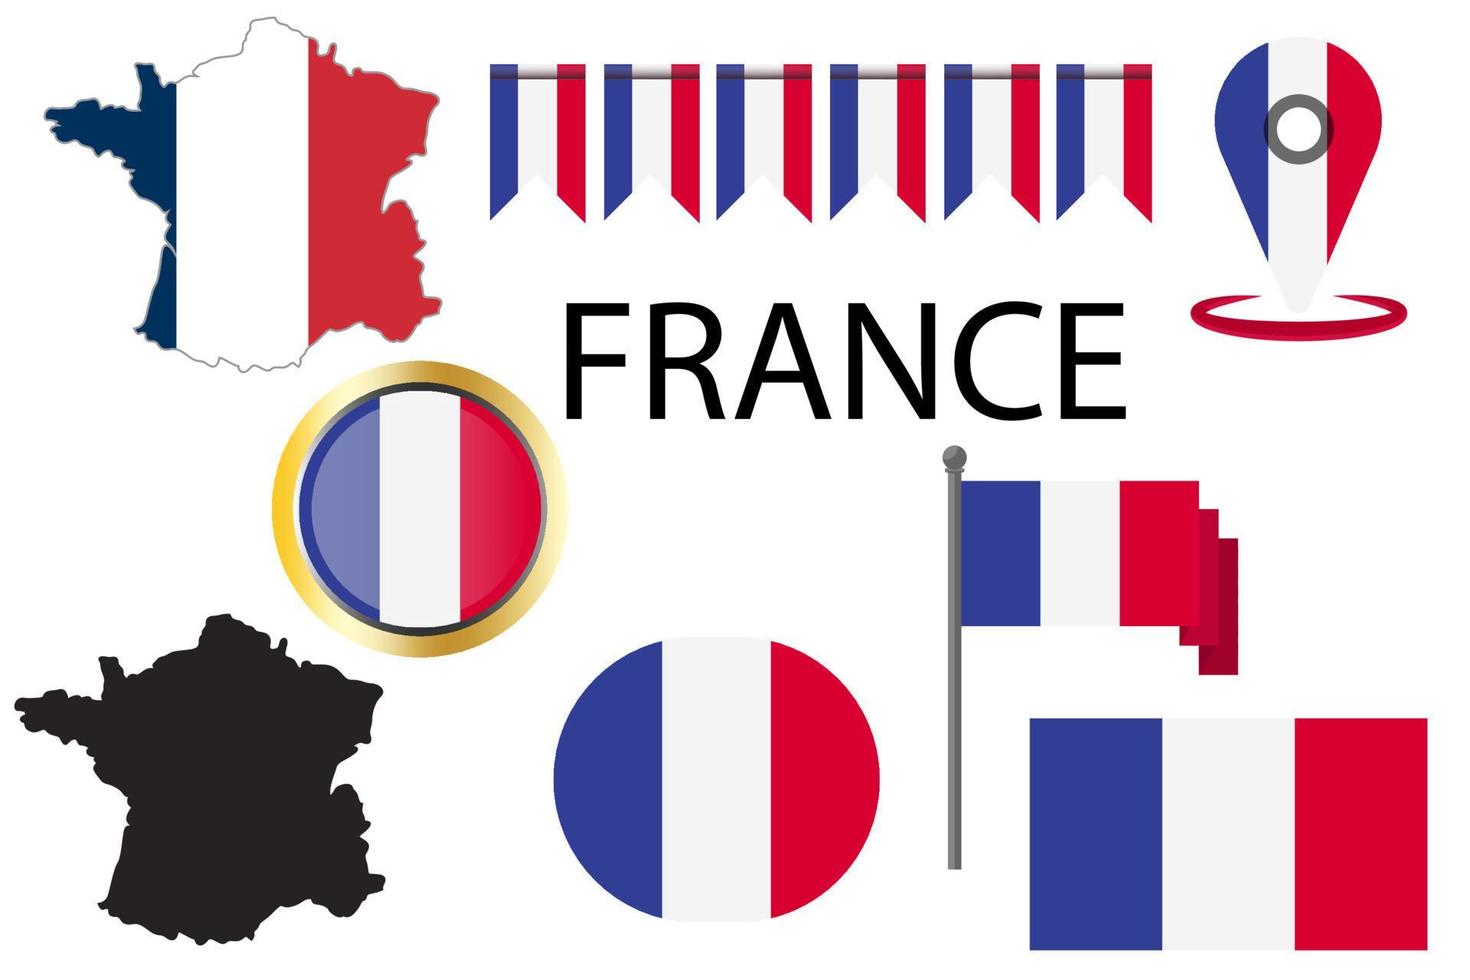 bandera y mapa del país de francia. vectores